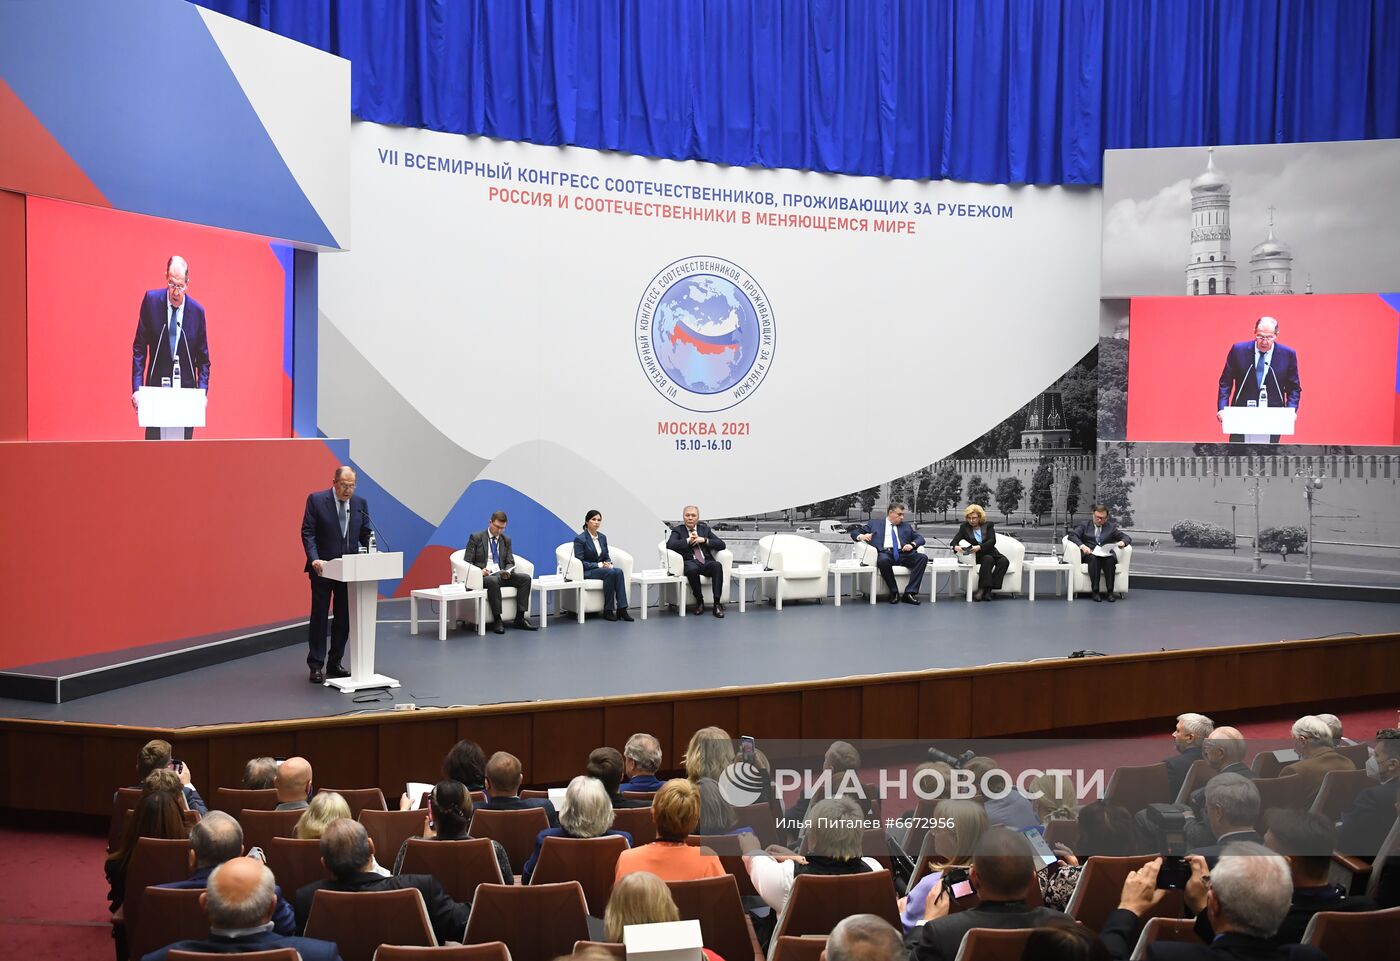 VII Всемирный конгресс российских соотечественников, проживающих за рубежом 